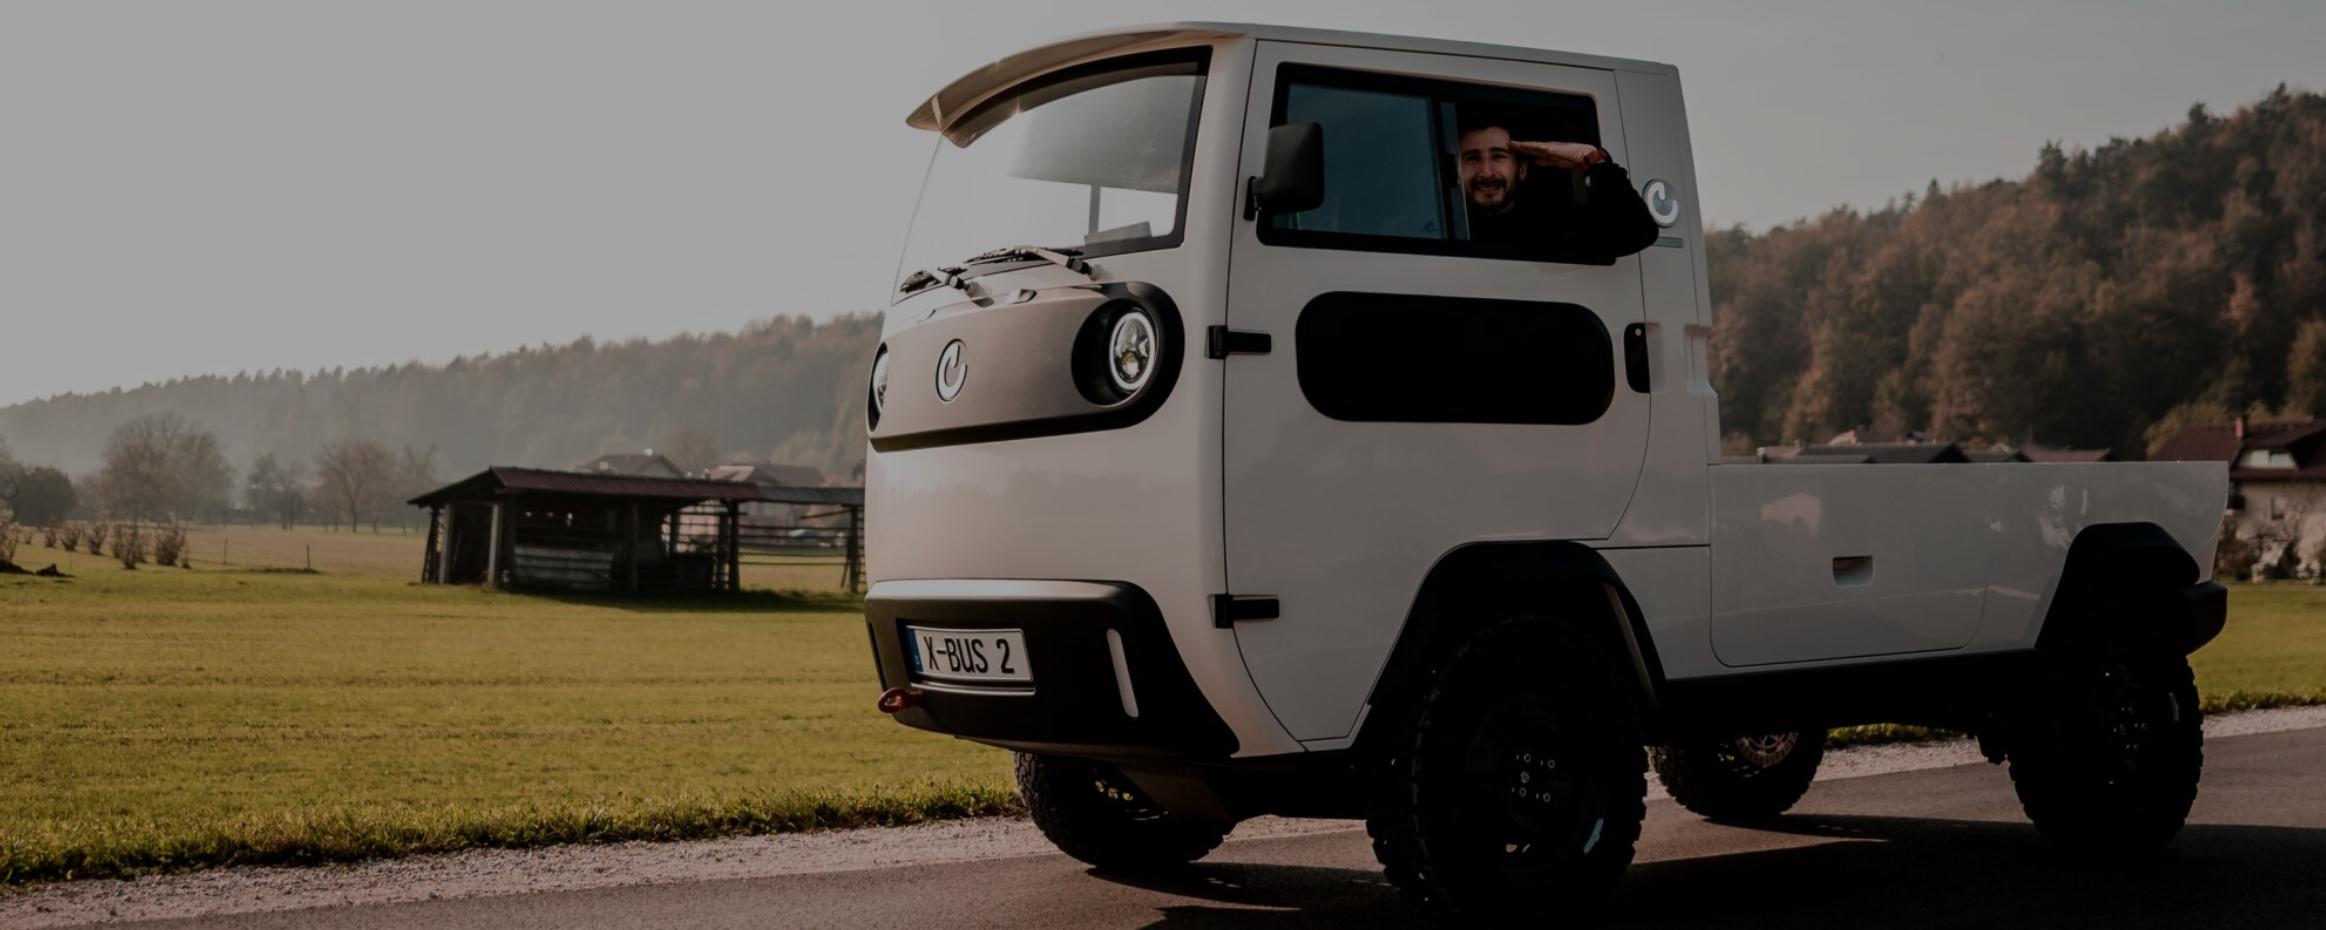 XBUS – autocaravana camper electrica del futuro